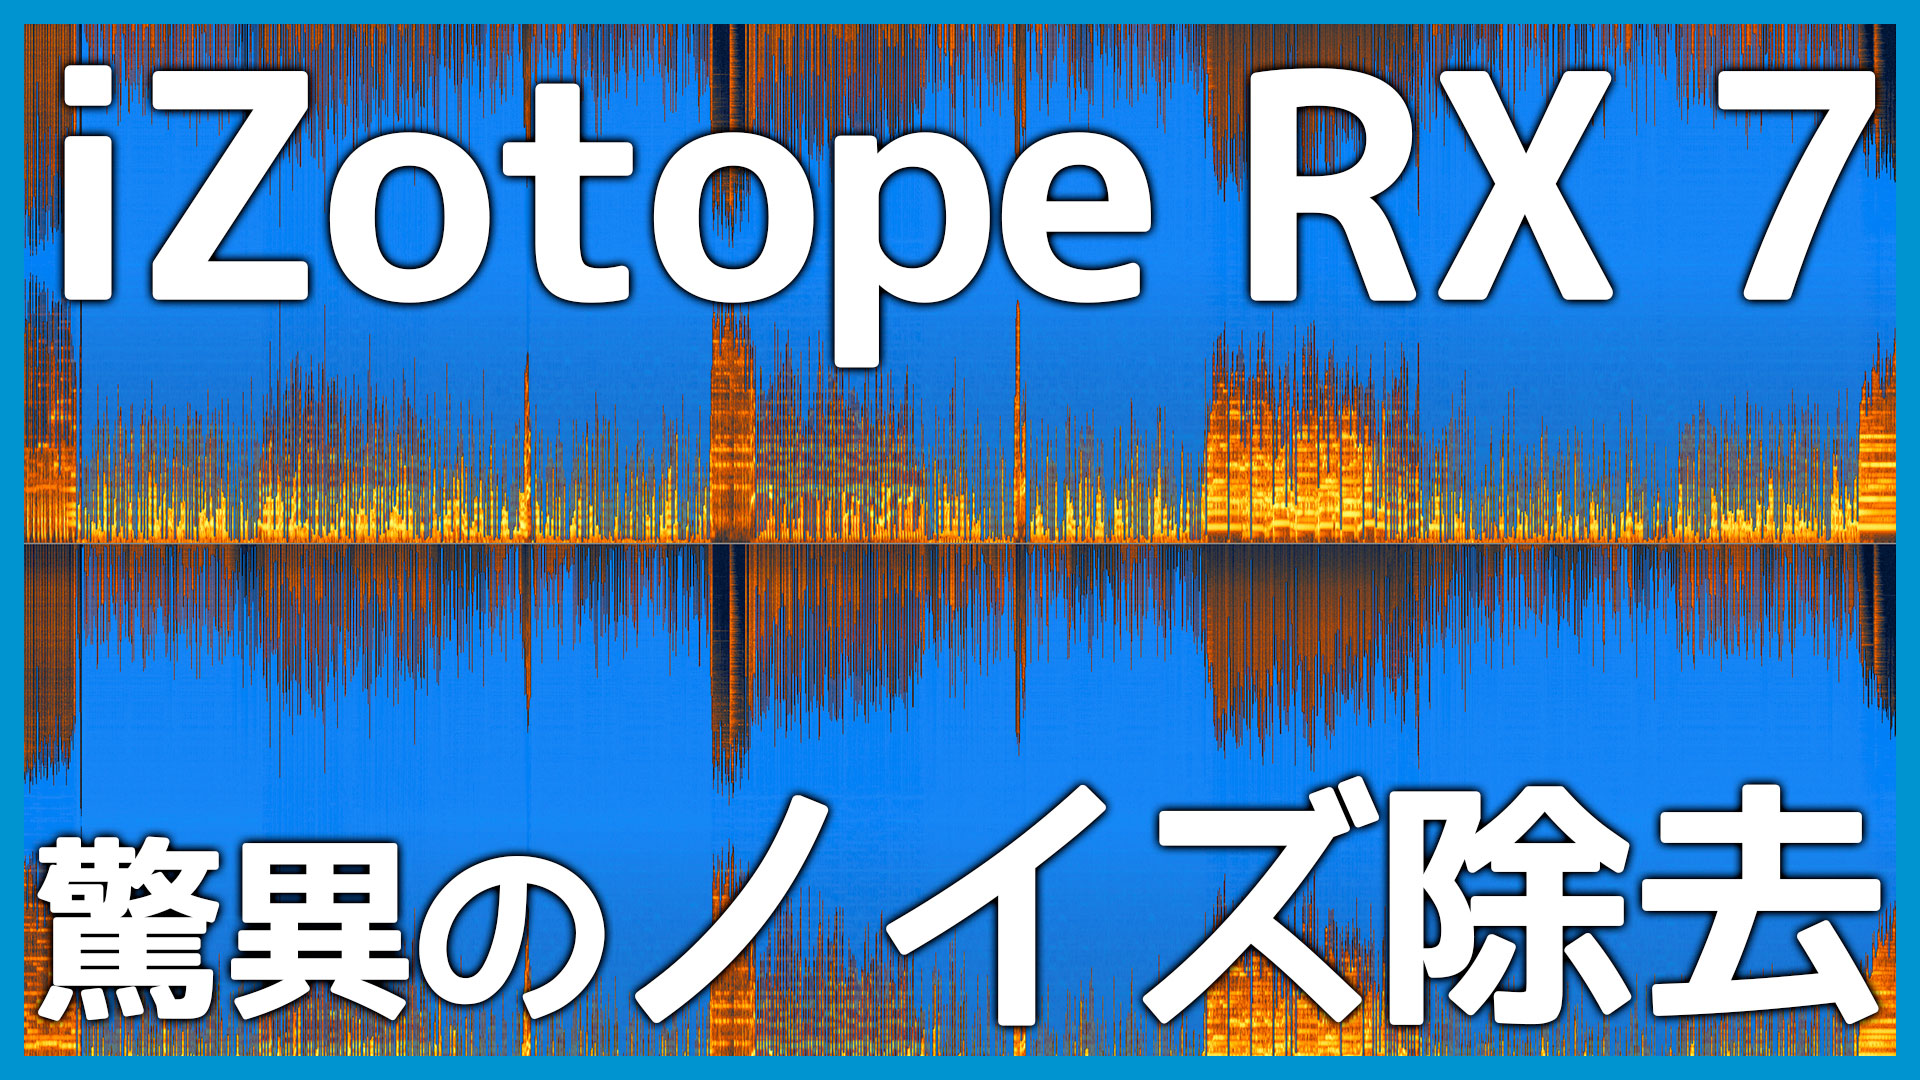 ノイズ除去ソフト「iZotope RX 7」がどれくらいすごいのか語る